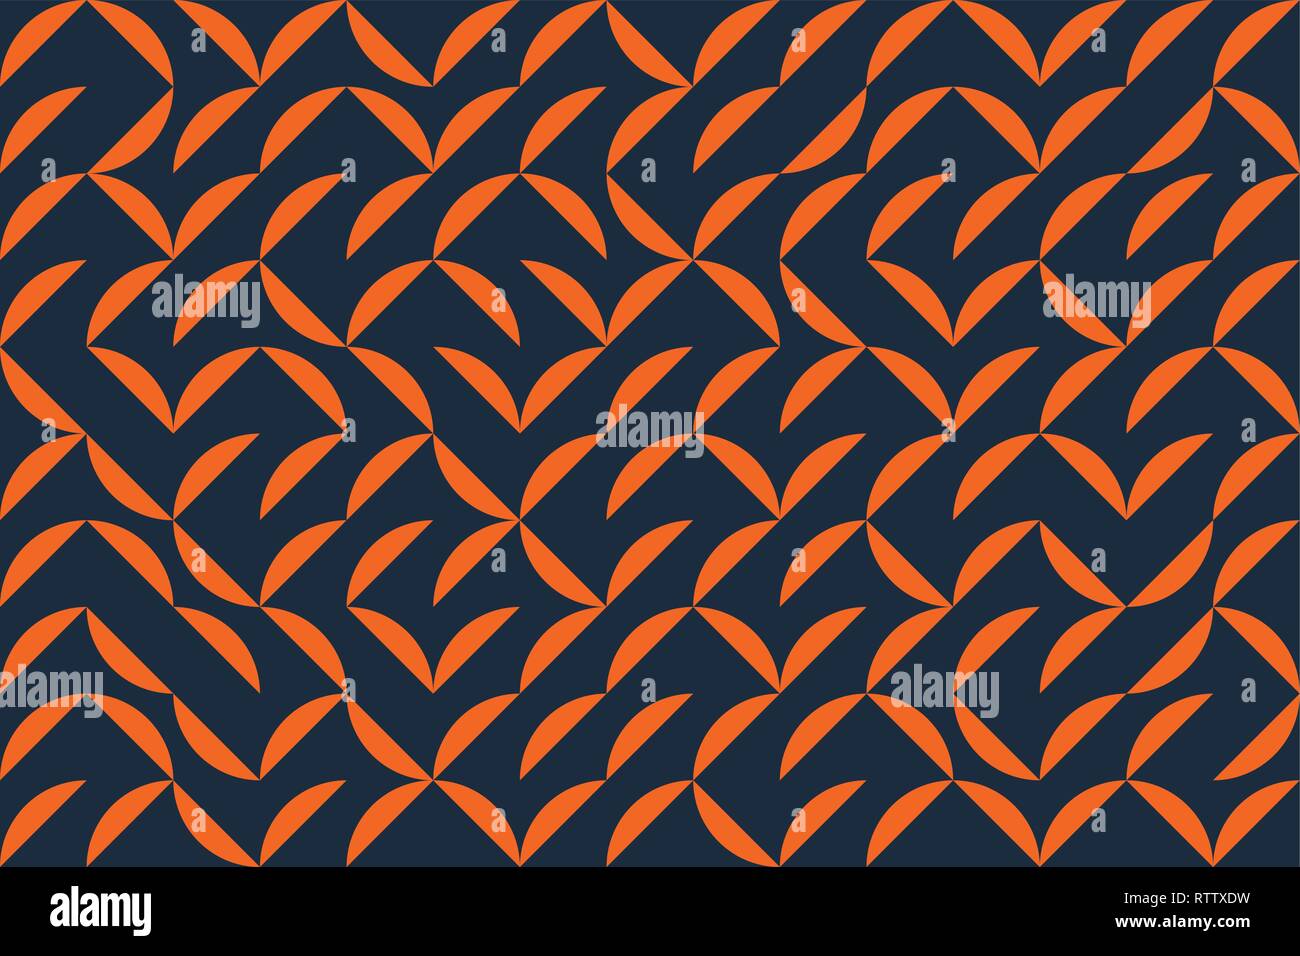 Sin fisuras, la trama de fondo abstracto con formas geométricas circulares. Juguetón, moderno arte vectorial en colores naranja y azul. Ilustración del Vector